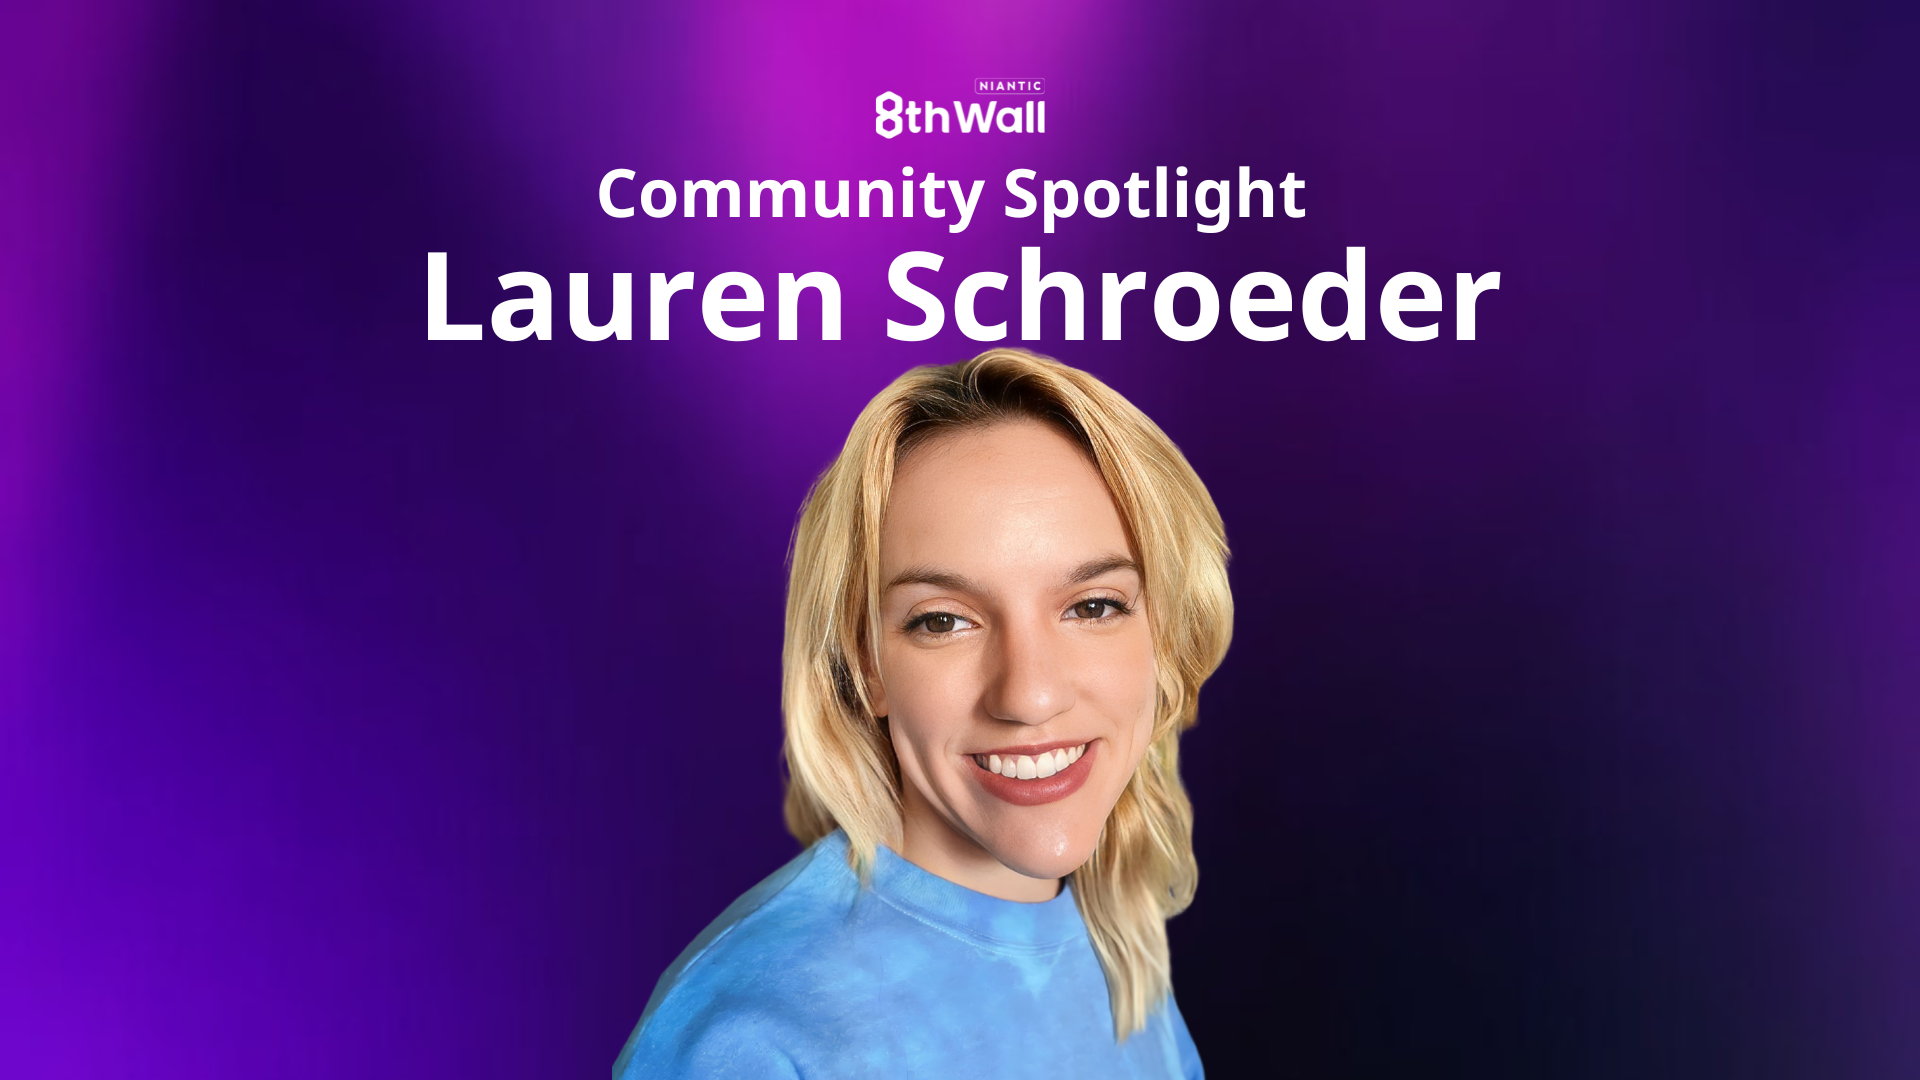 Community Spotlight: Meet Lauren Schroeder